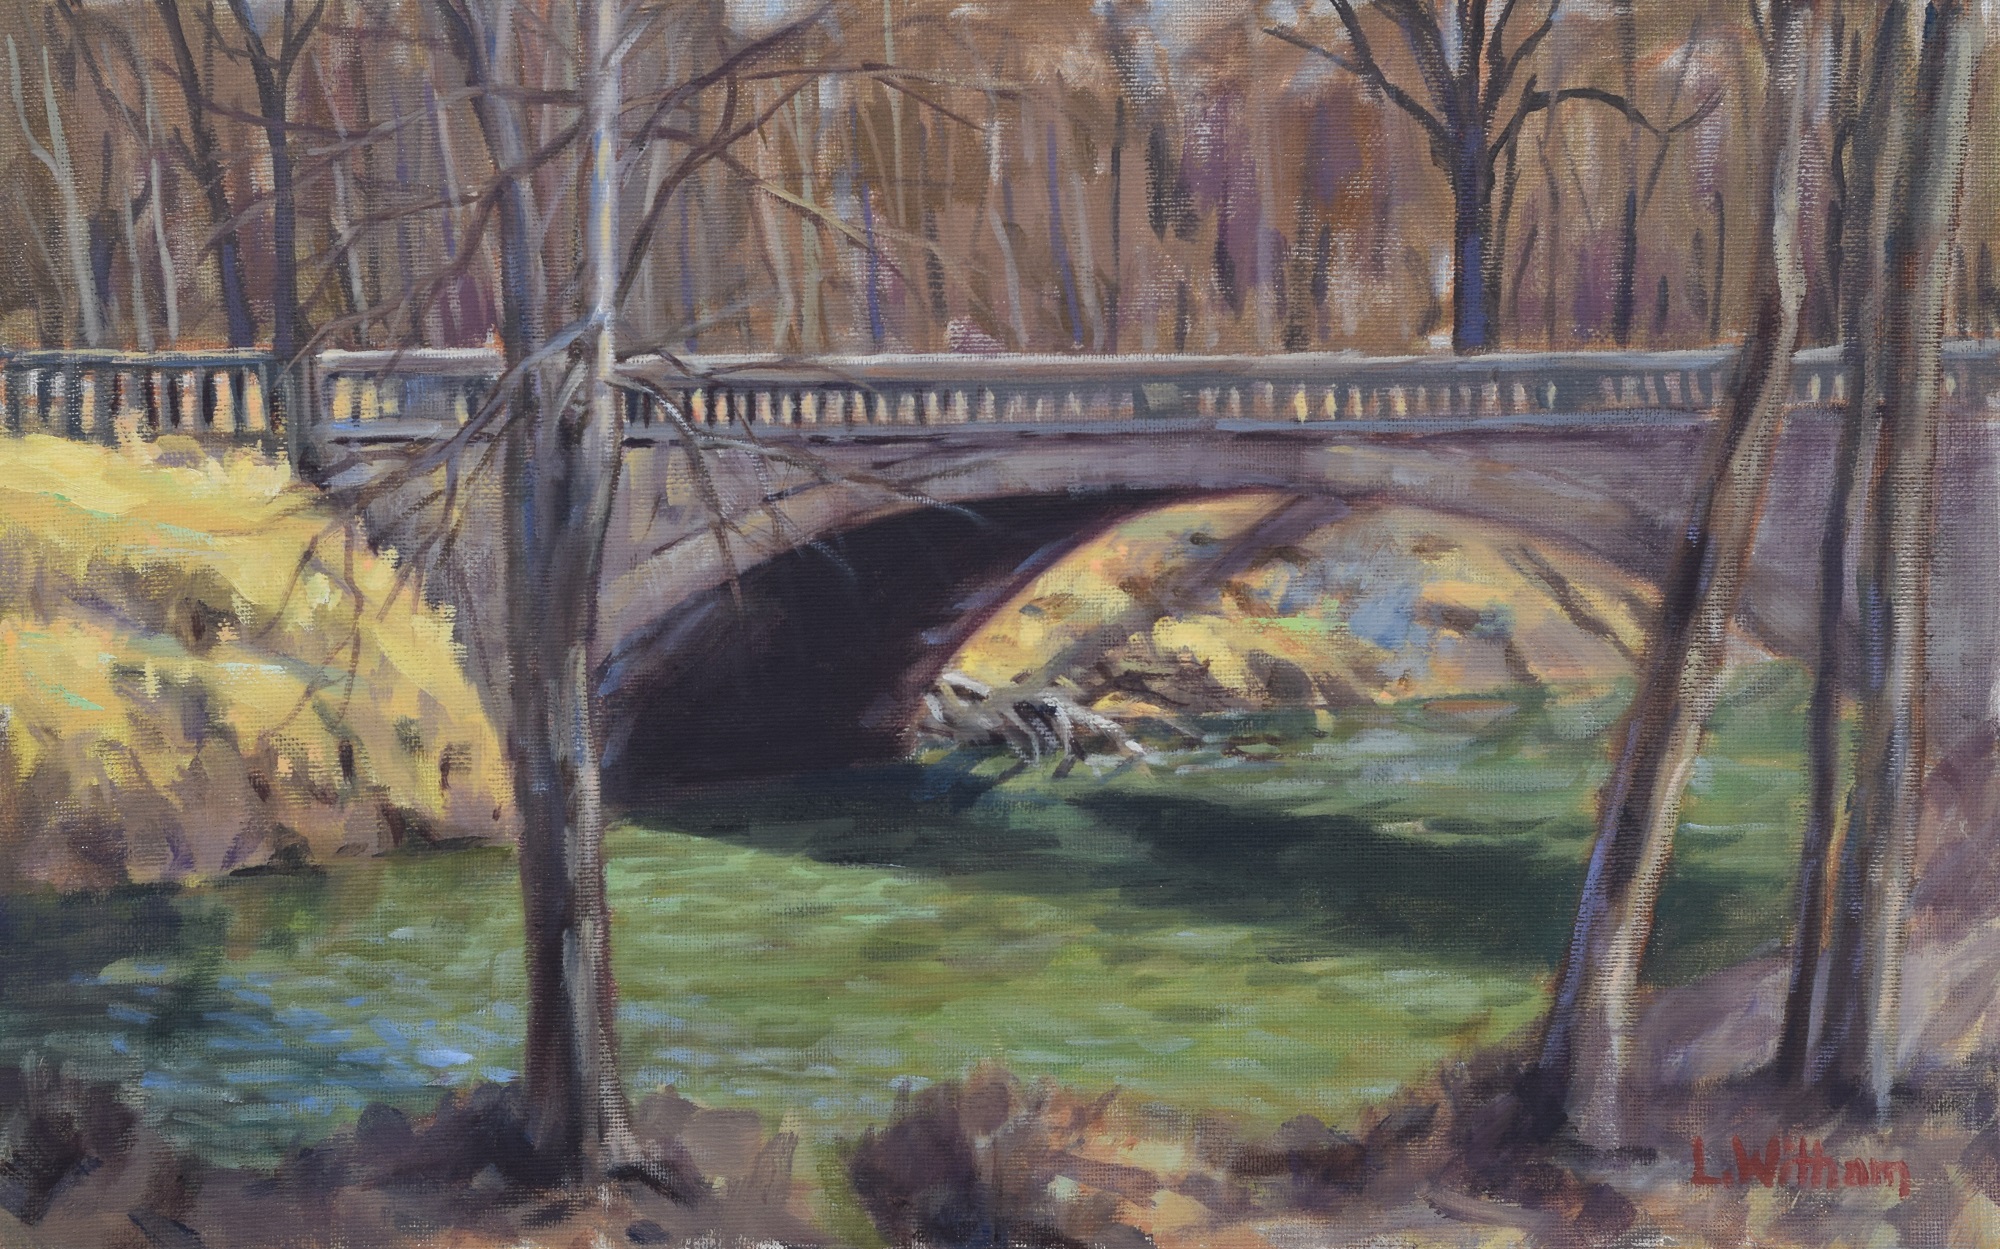 Patuxent Bridge, Oil on canvas, 10x16